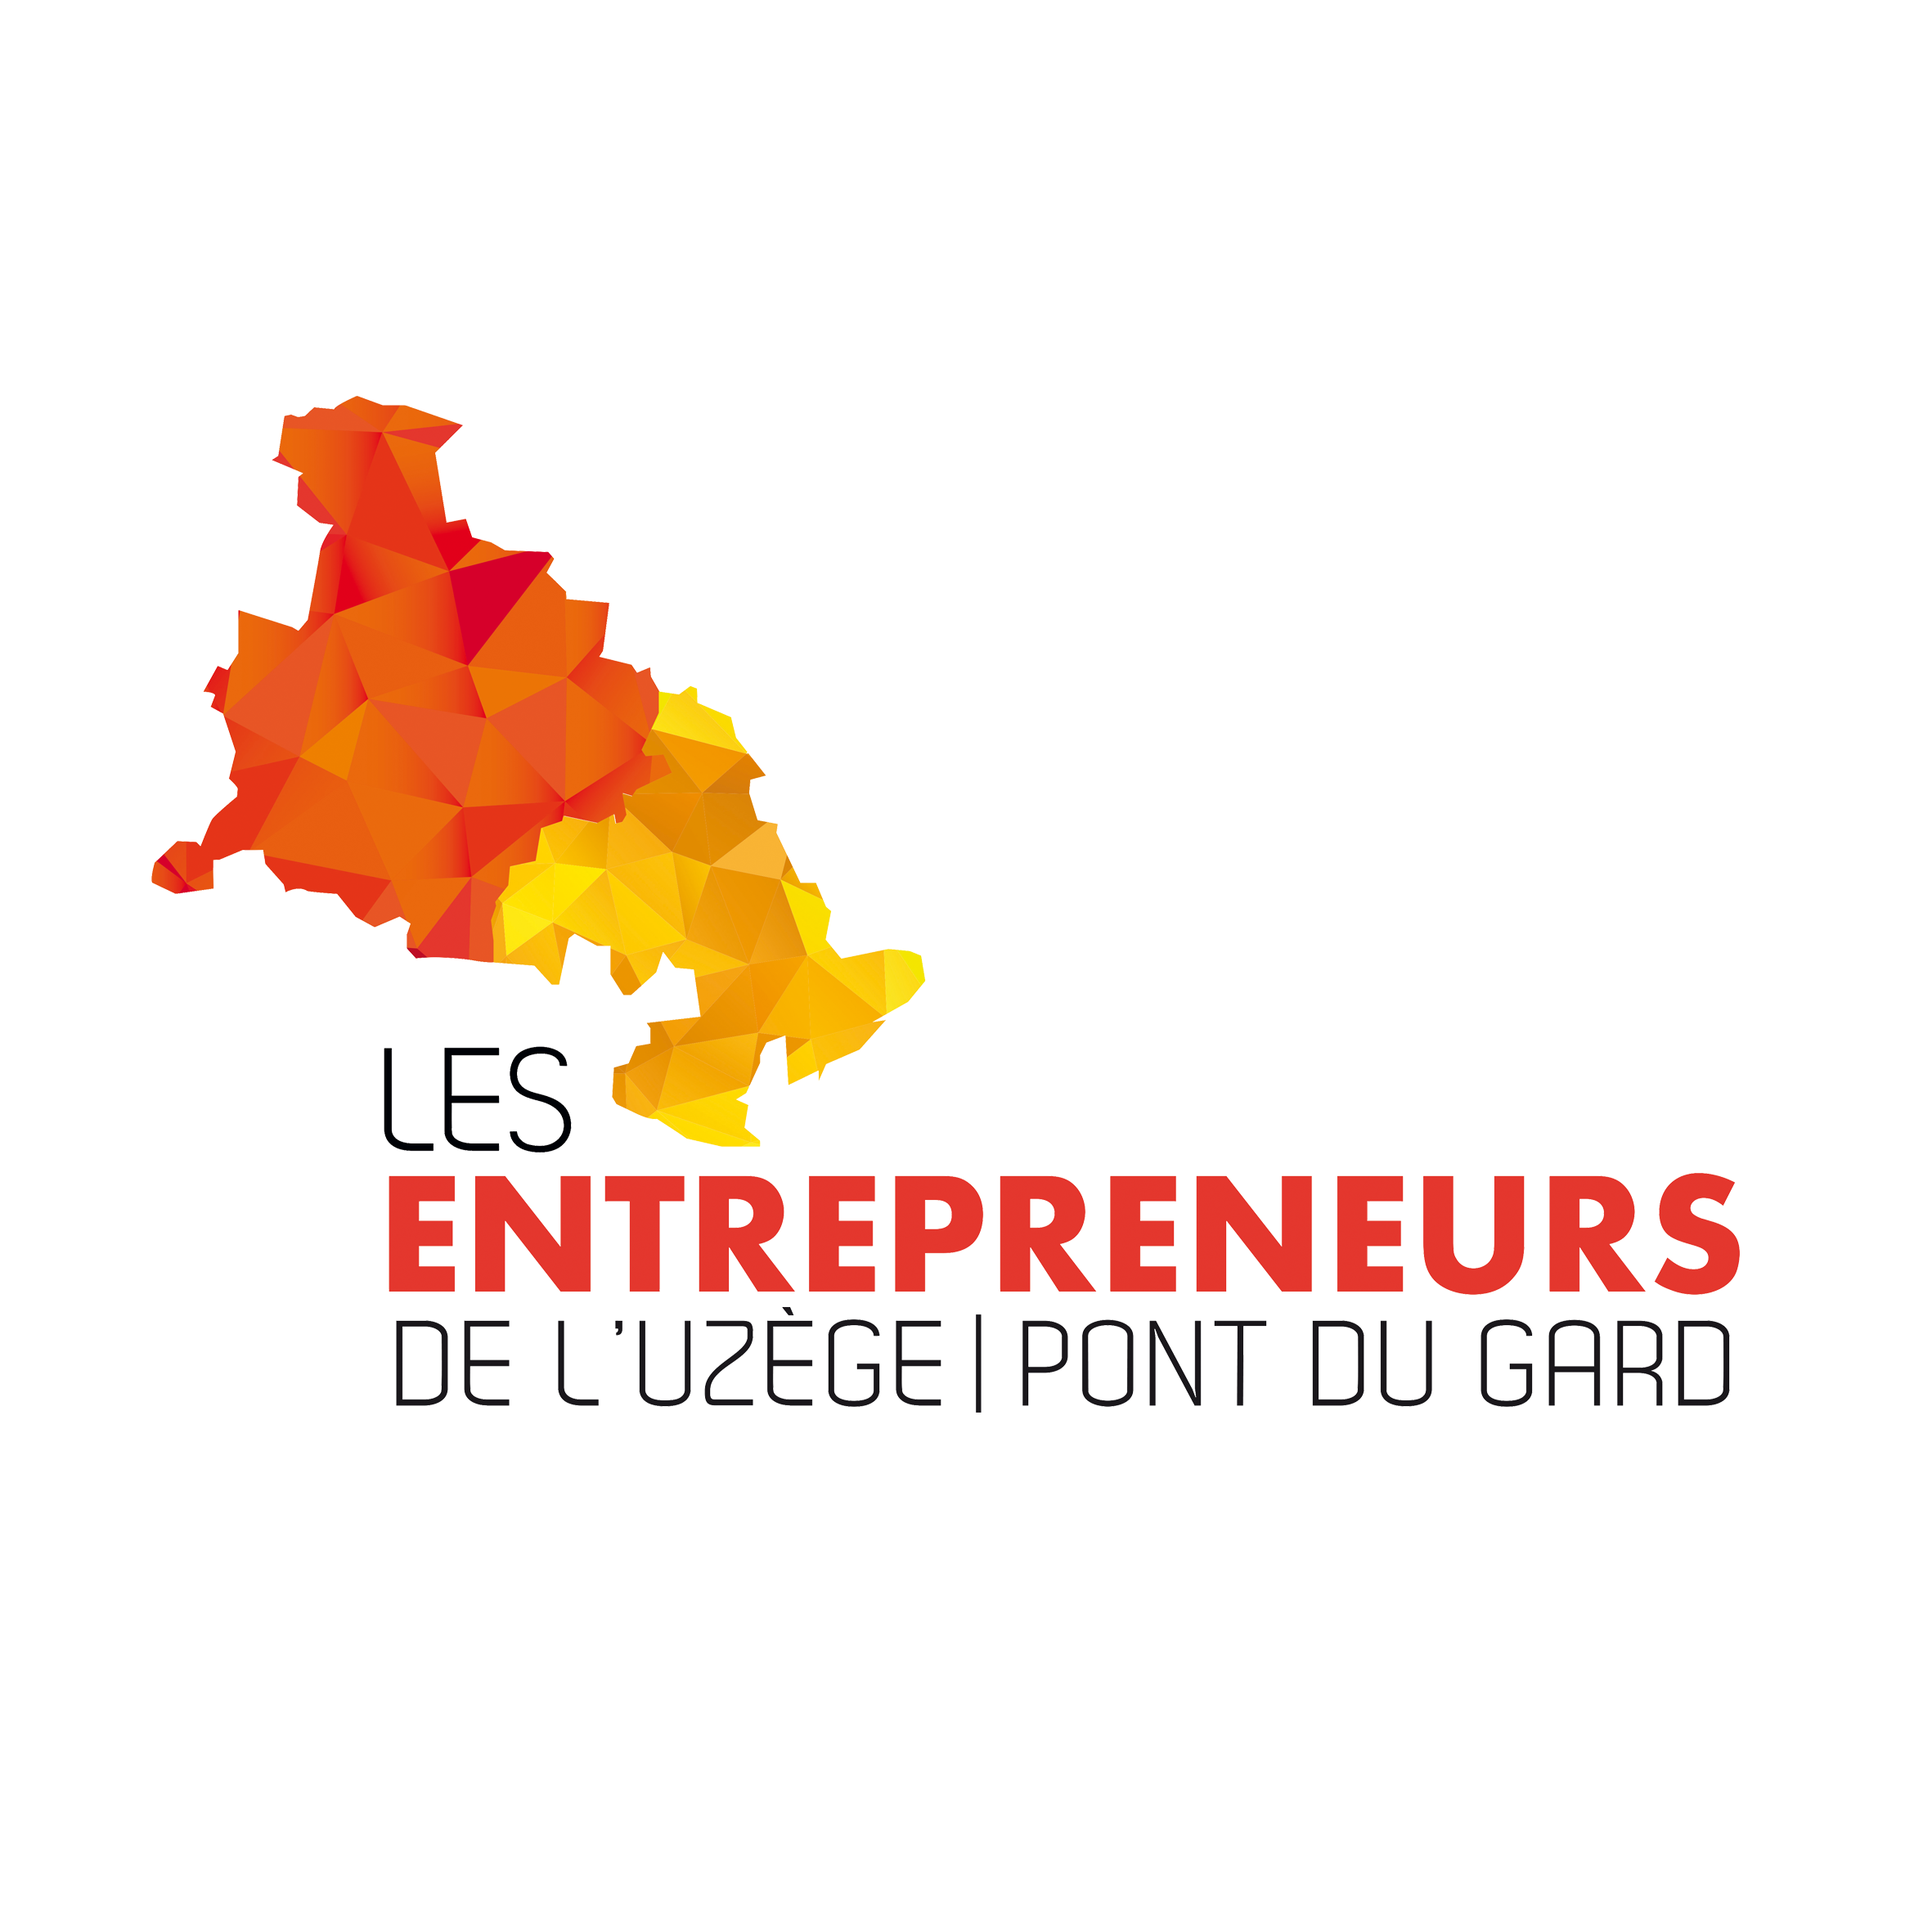 Club des Entrepreneurs Uzège Pt du Gard